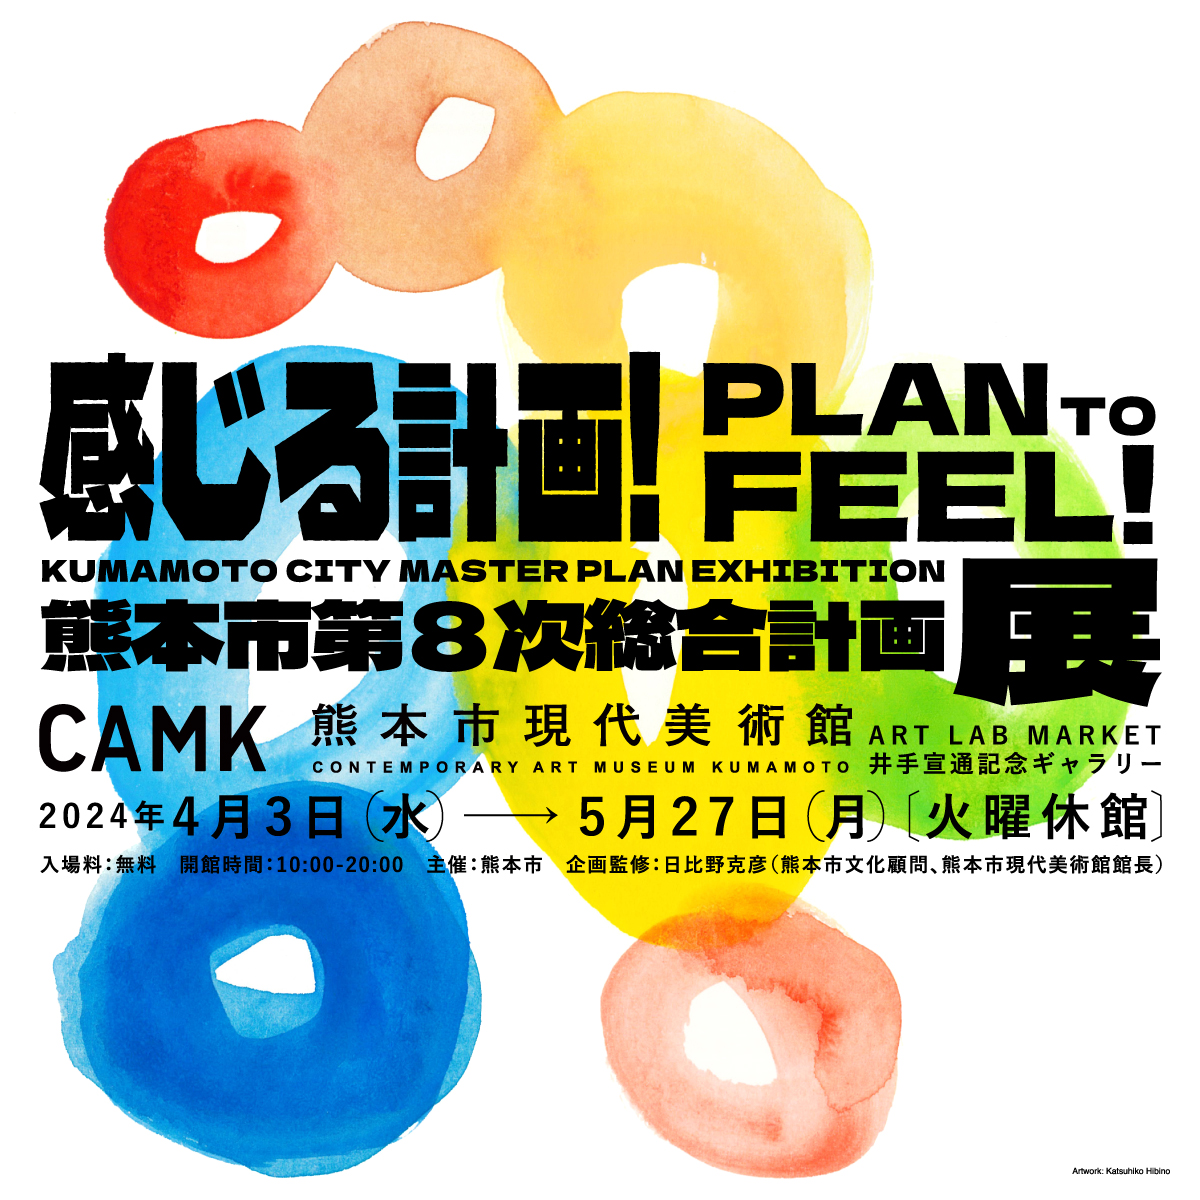 感じる計画！ PLAN TO FEEL! 熊本市第8次総合計画展